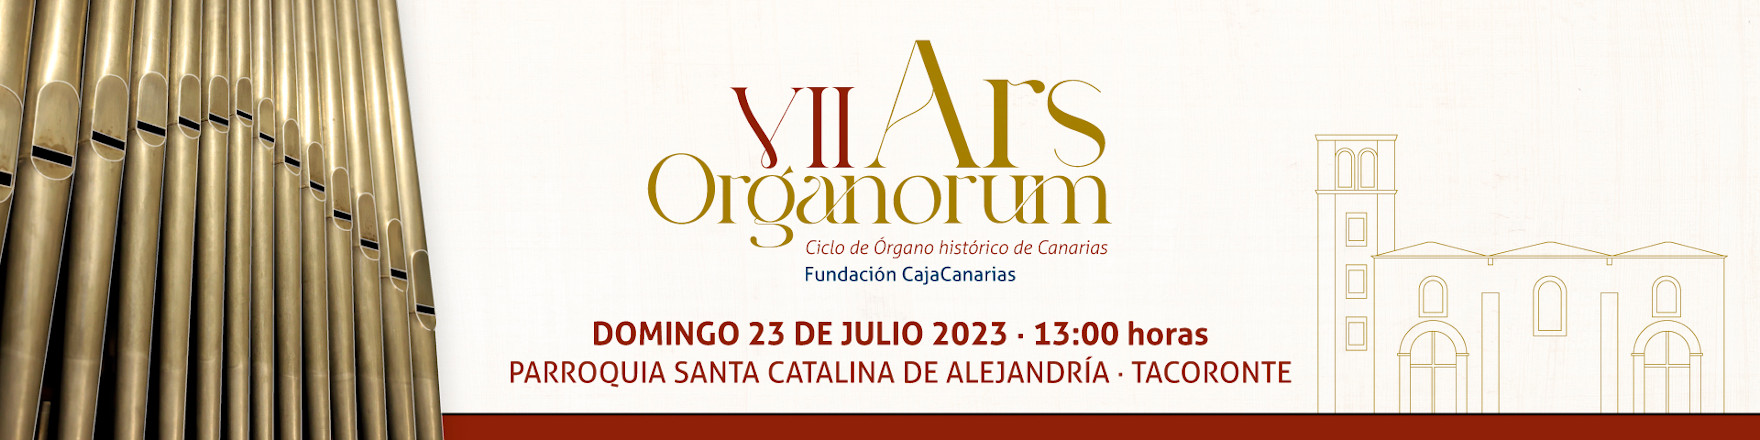 Conciertos - Ars Organorum - Tacoronte - 23 de julio